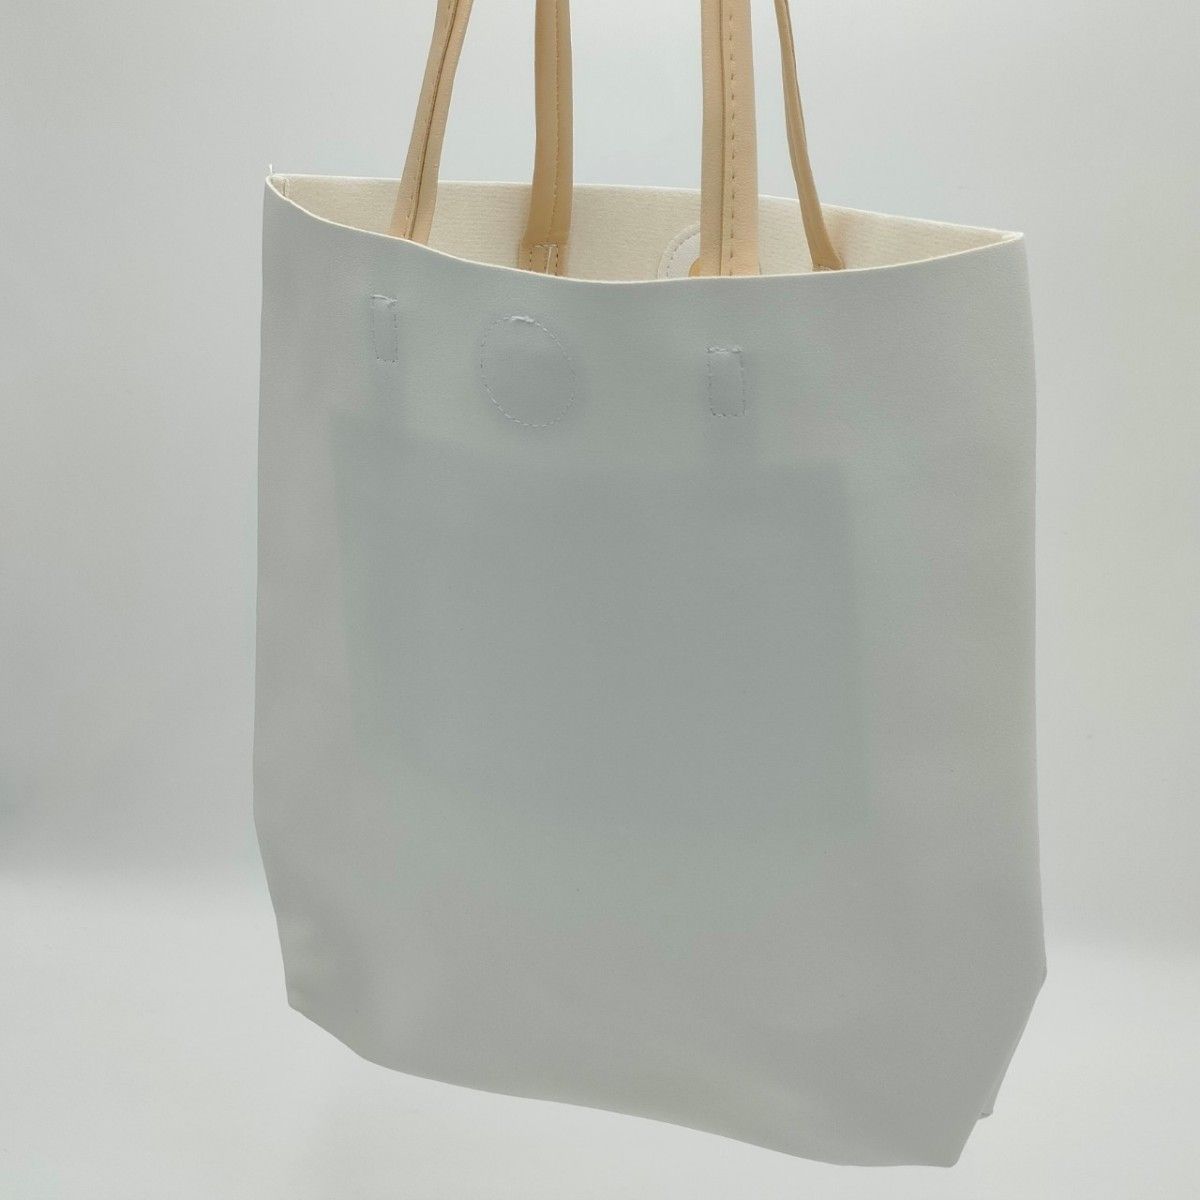 【合皮カバン/白】トートバッグ  鞄 カバン バック BAG かばん BLACK レザー バッグ 合皮トートバッグ シンプル 白